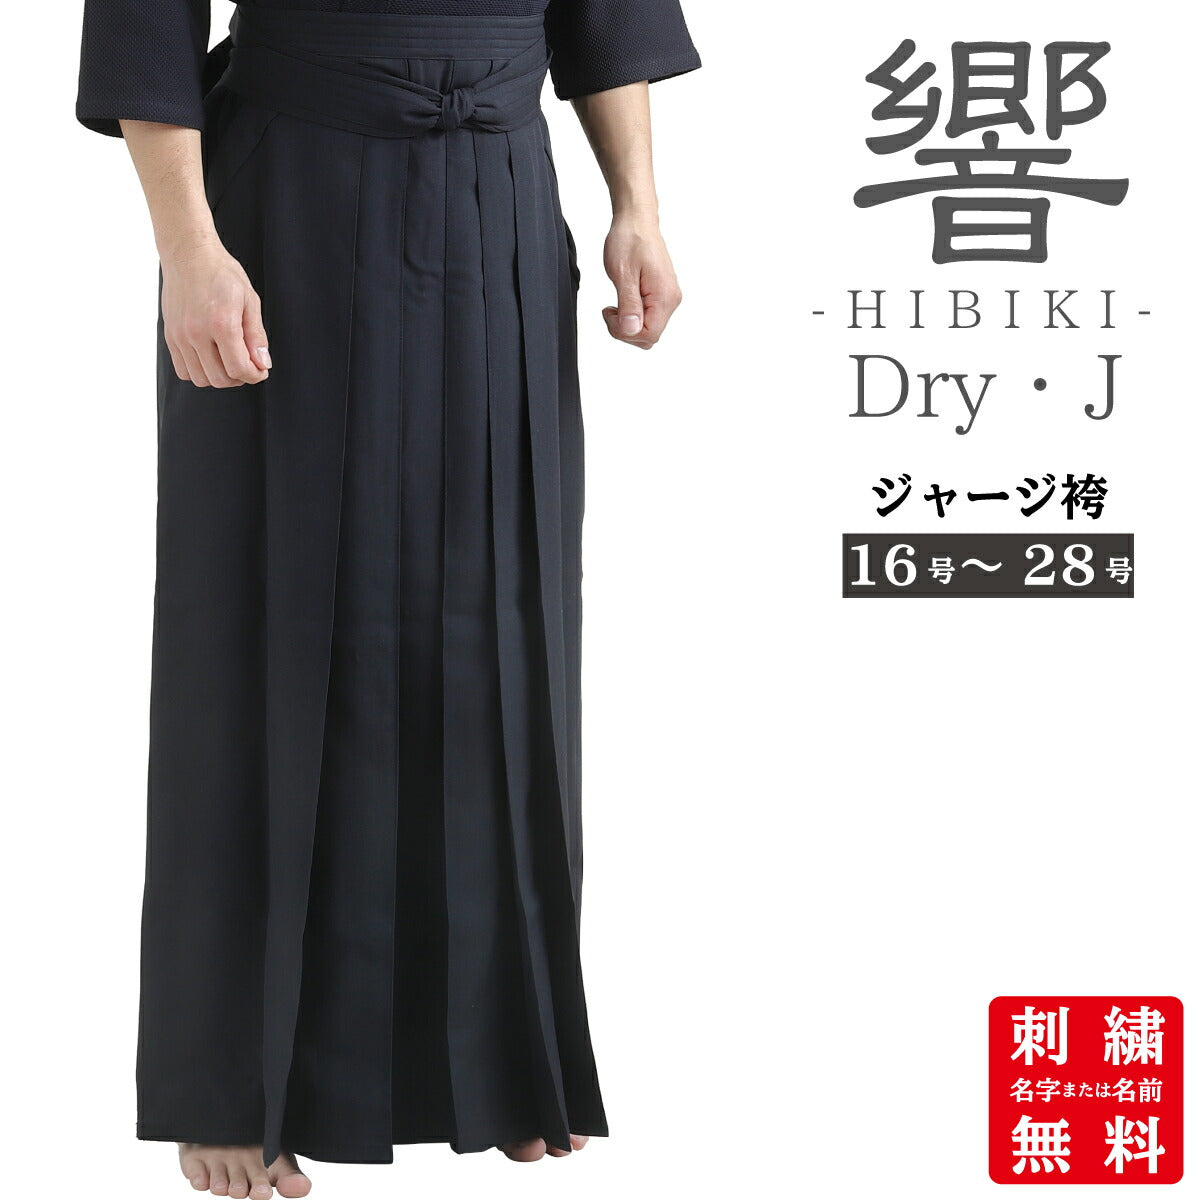 ドライジャージ袴 Dry・J 響- HIBIKI - – 西日本武道具